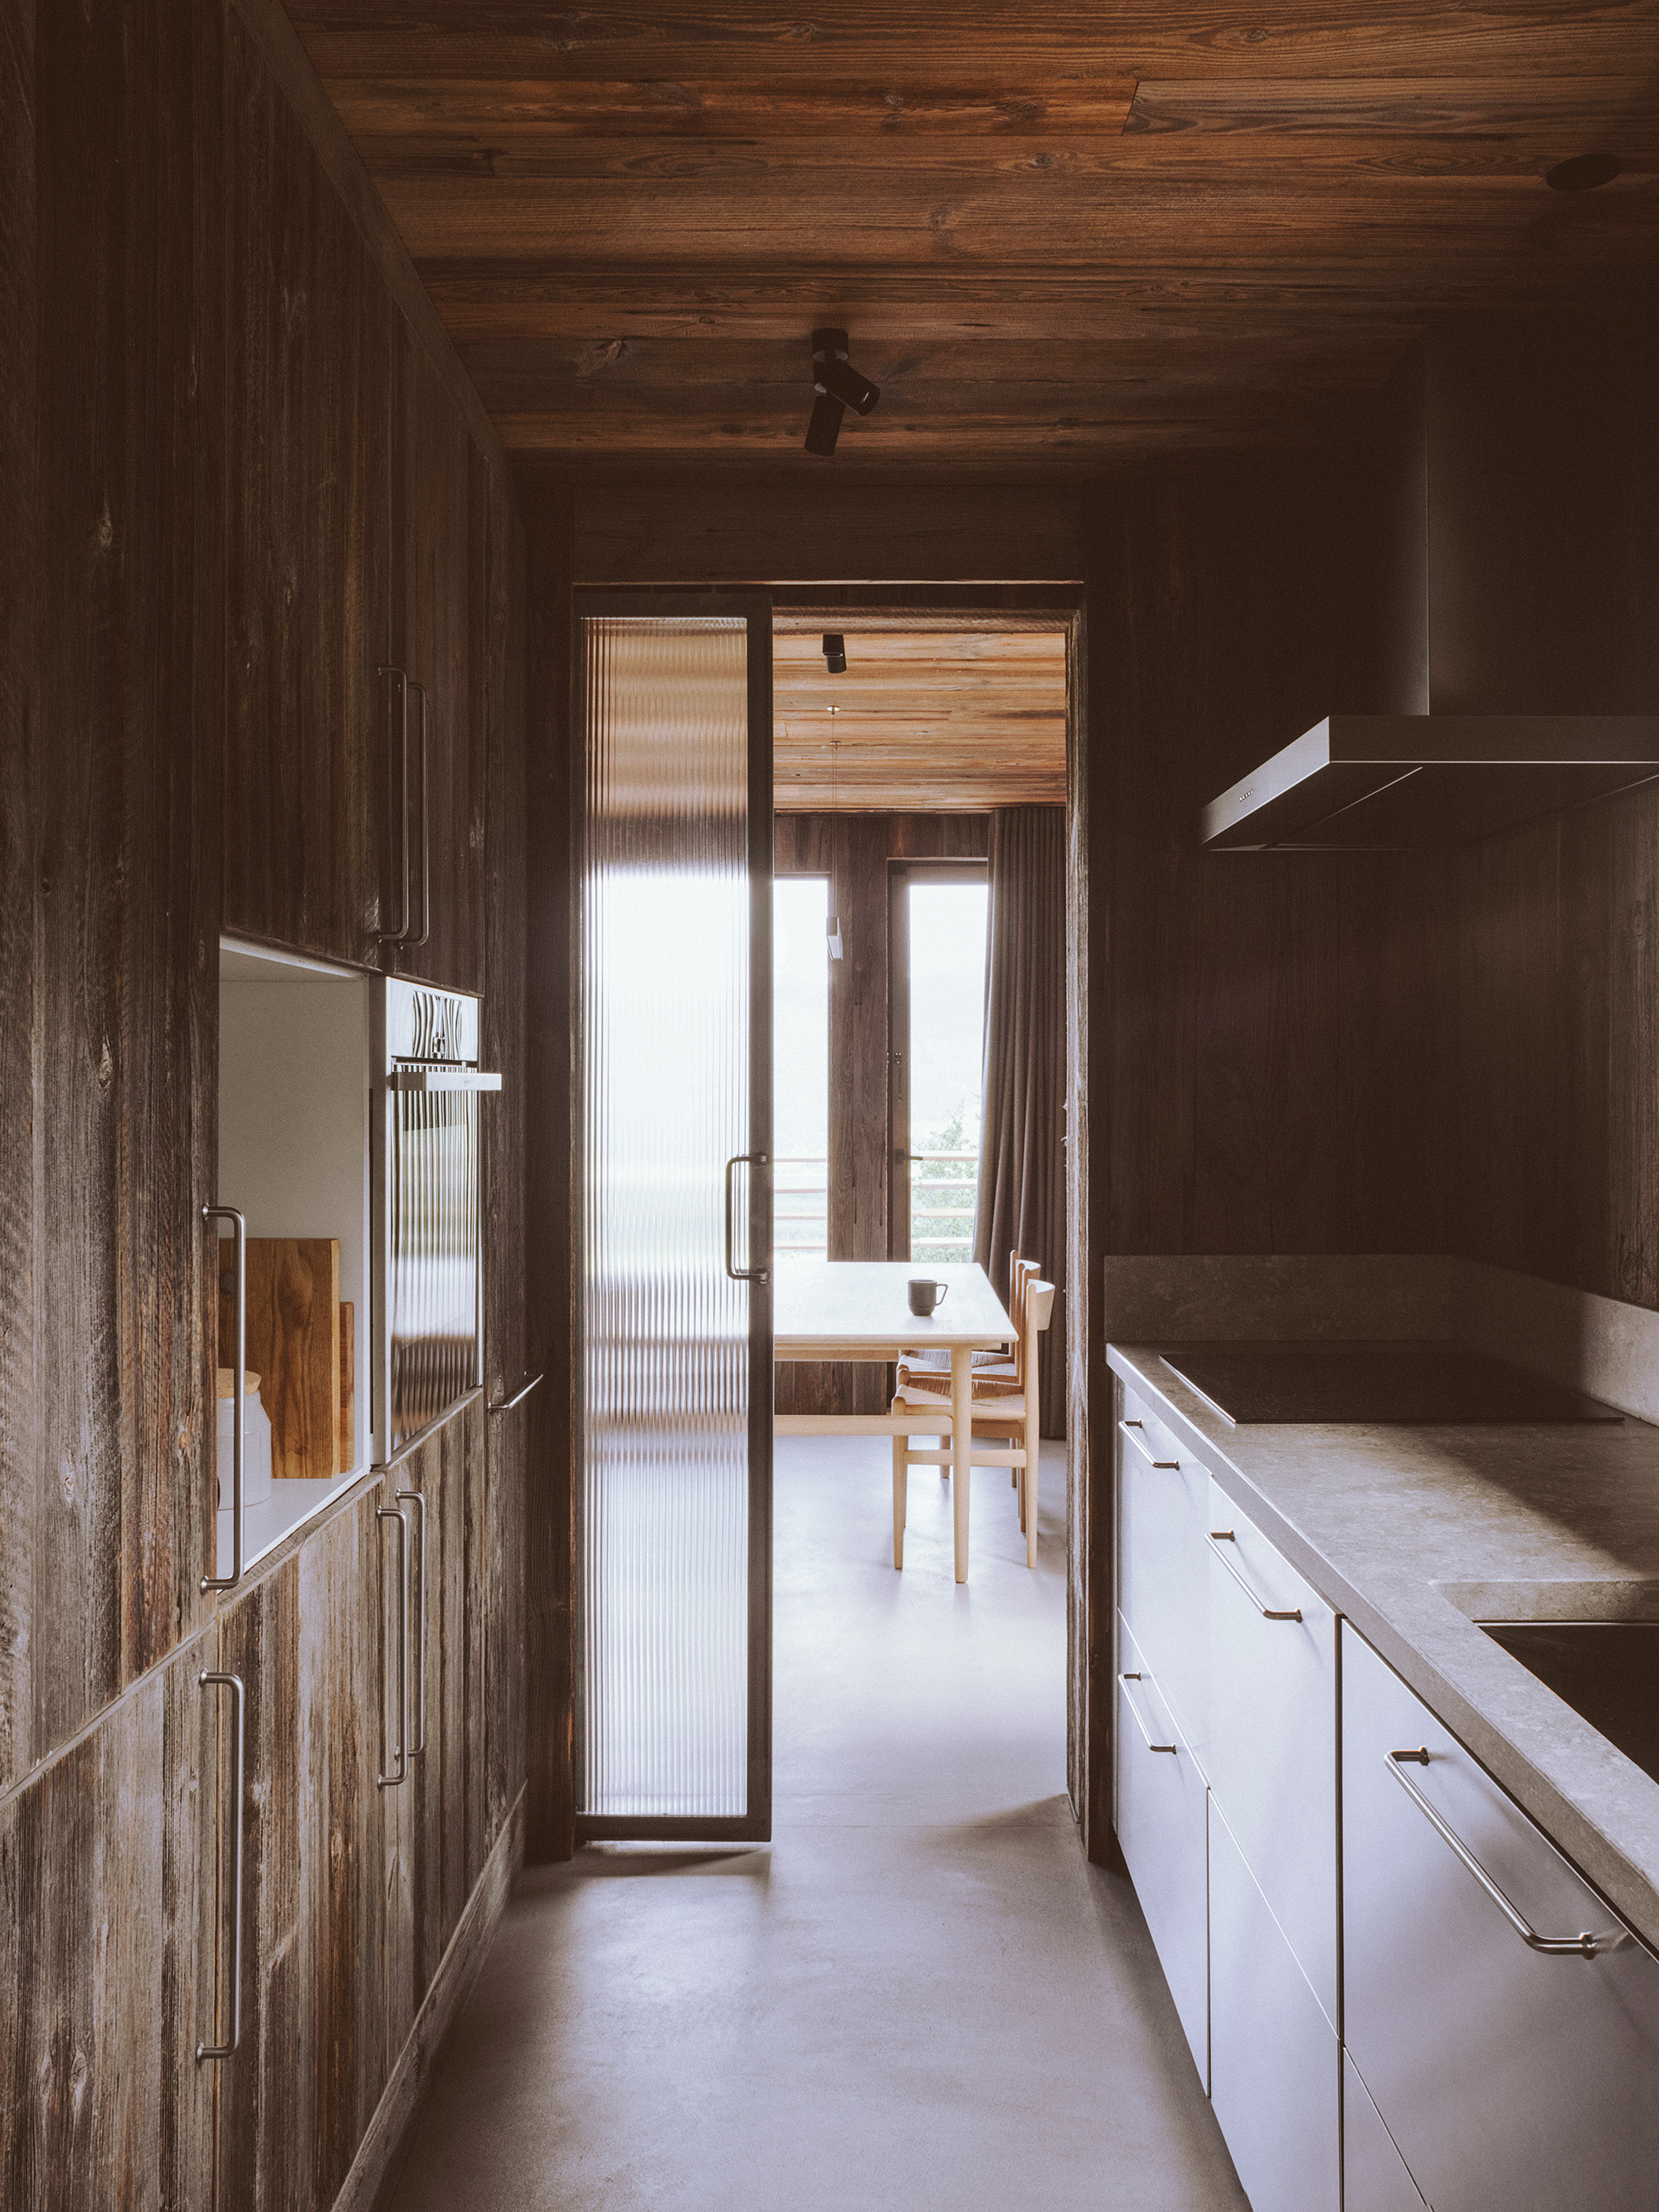 Rustic alpine chalet, kitchen